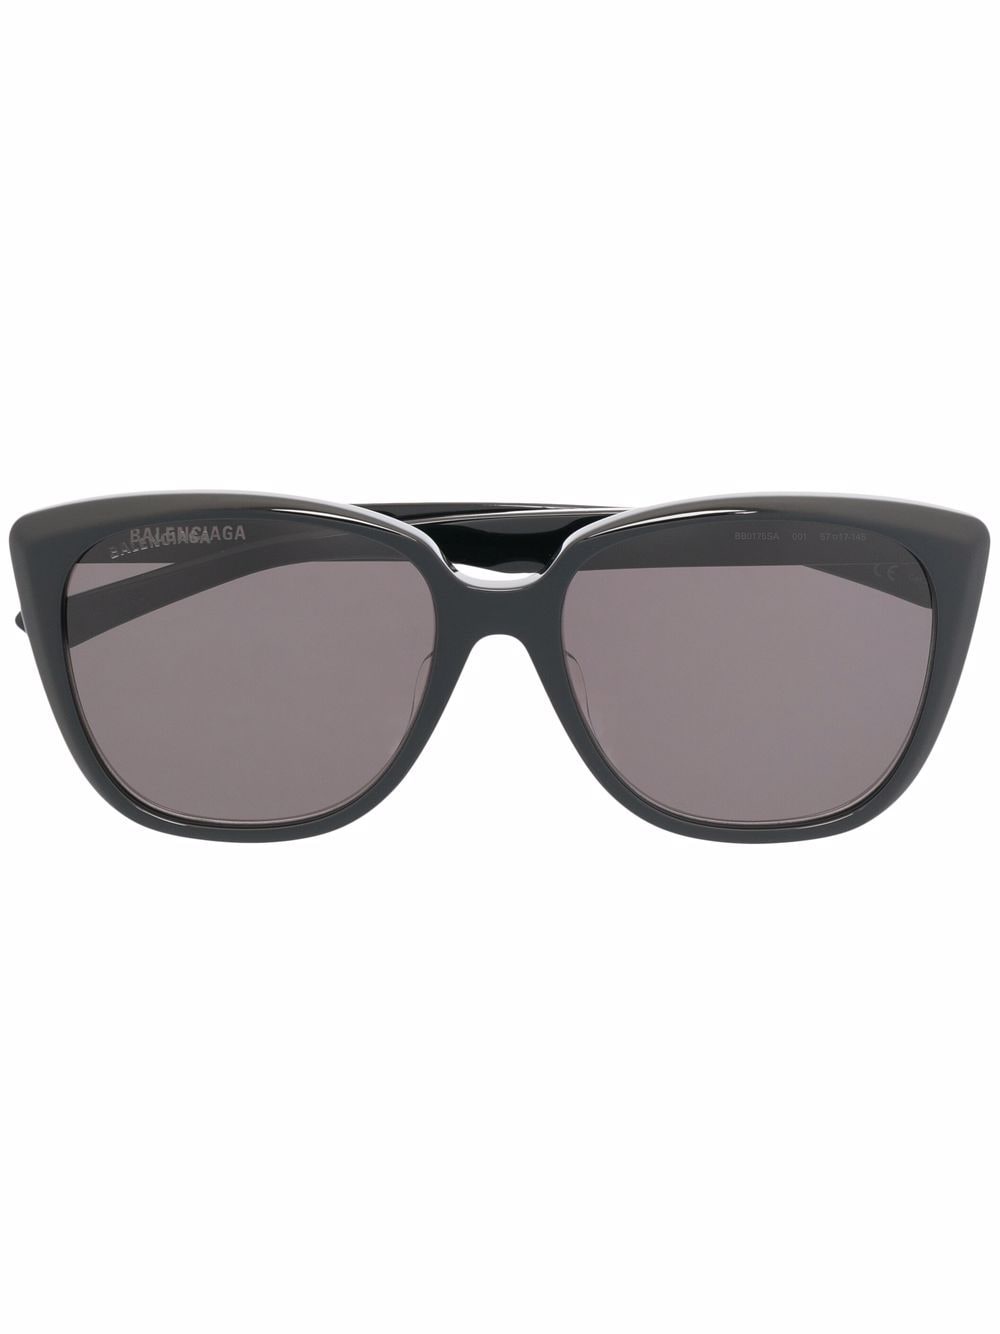 фото Balenciaga eyewear солнцезащитные очки в квадратной оправе